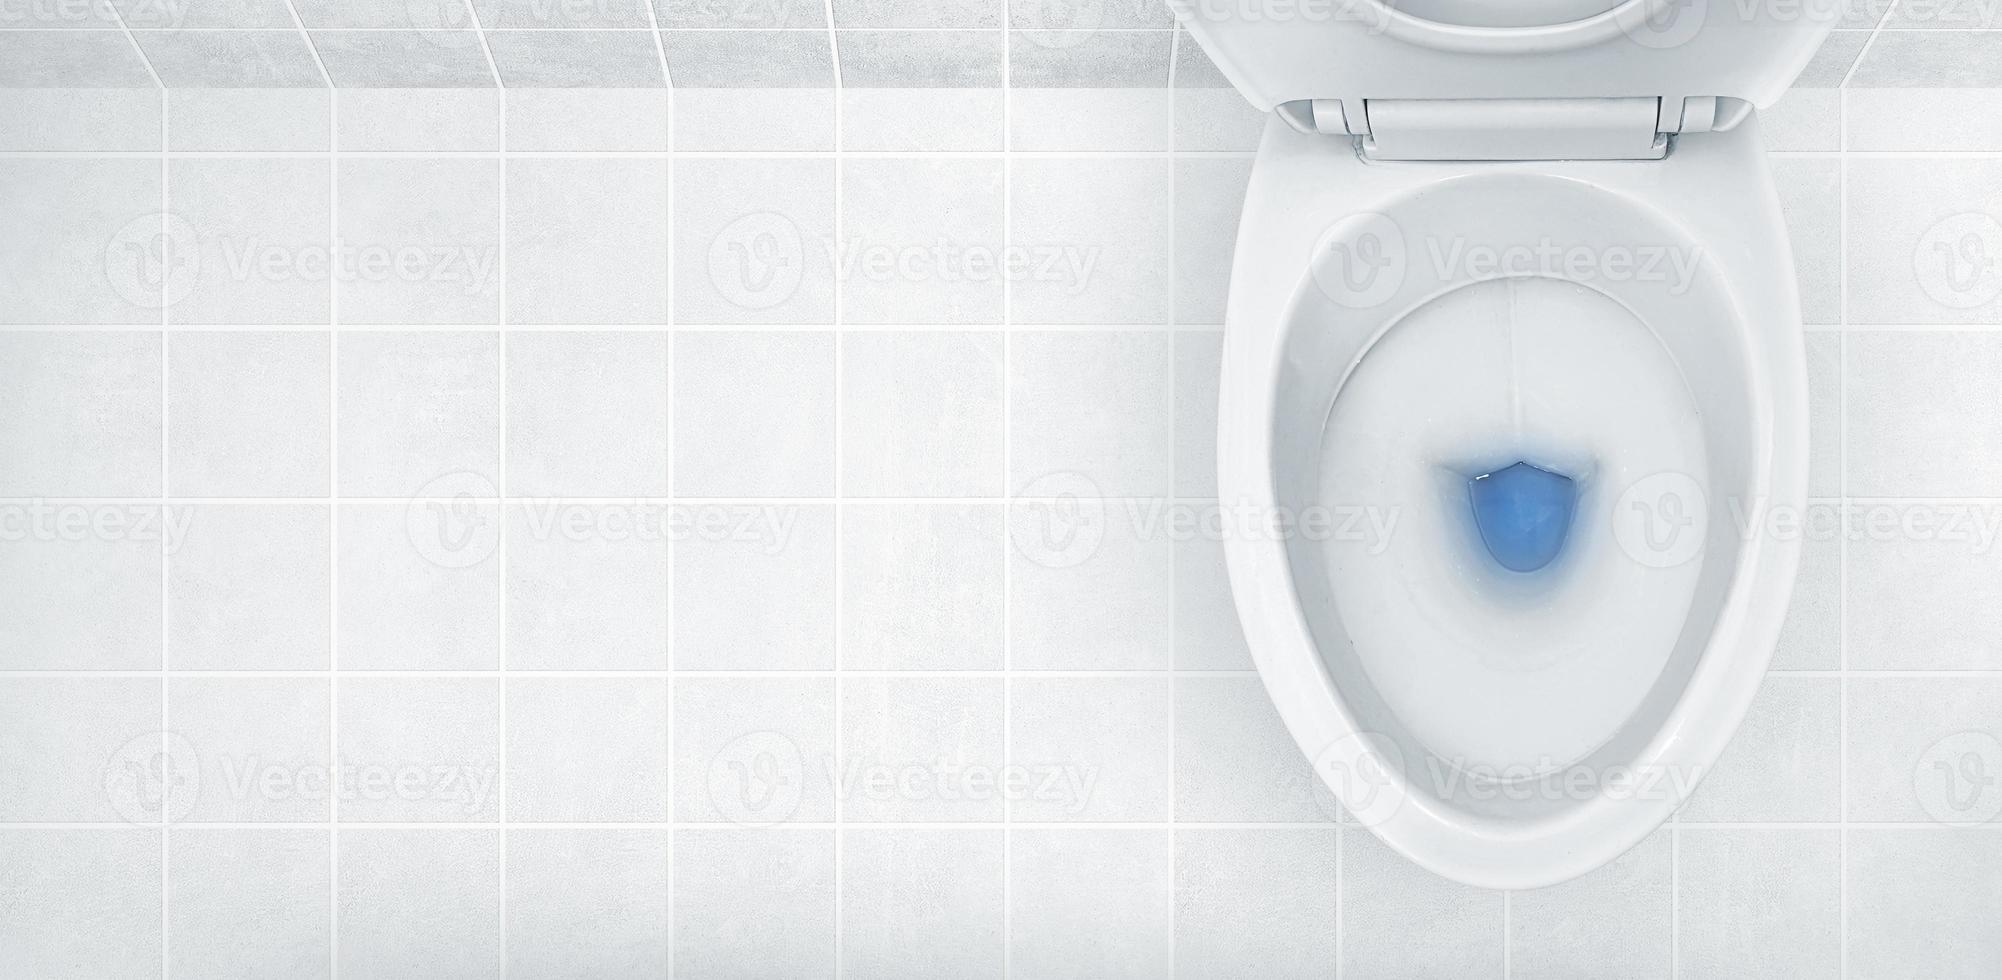 vista superior do vaso sanitário, detergente azul lavando nele foto